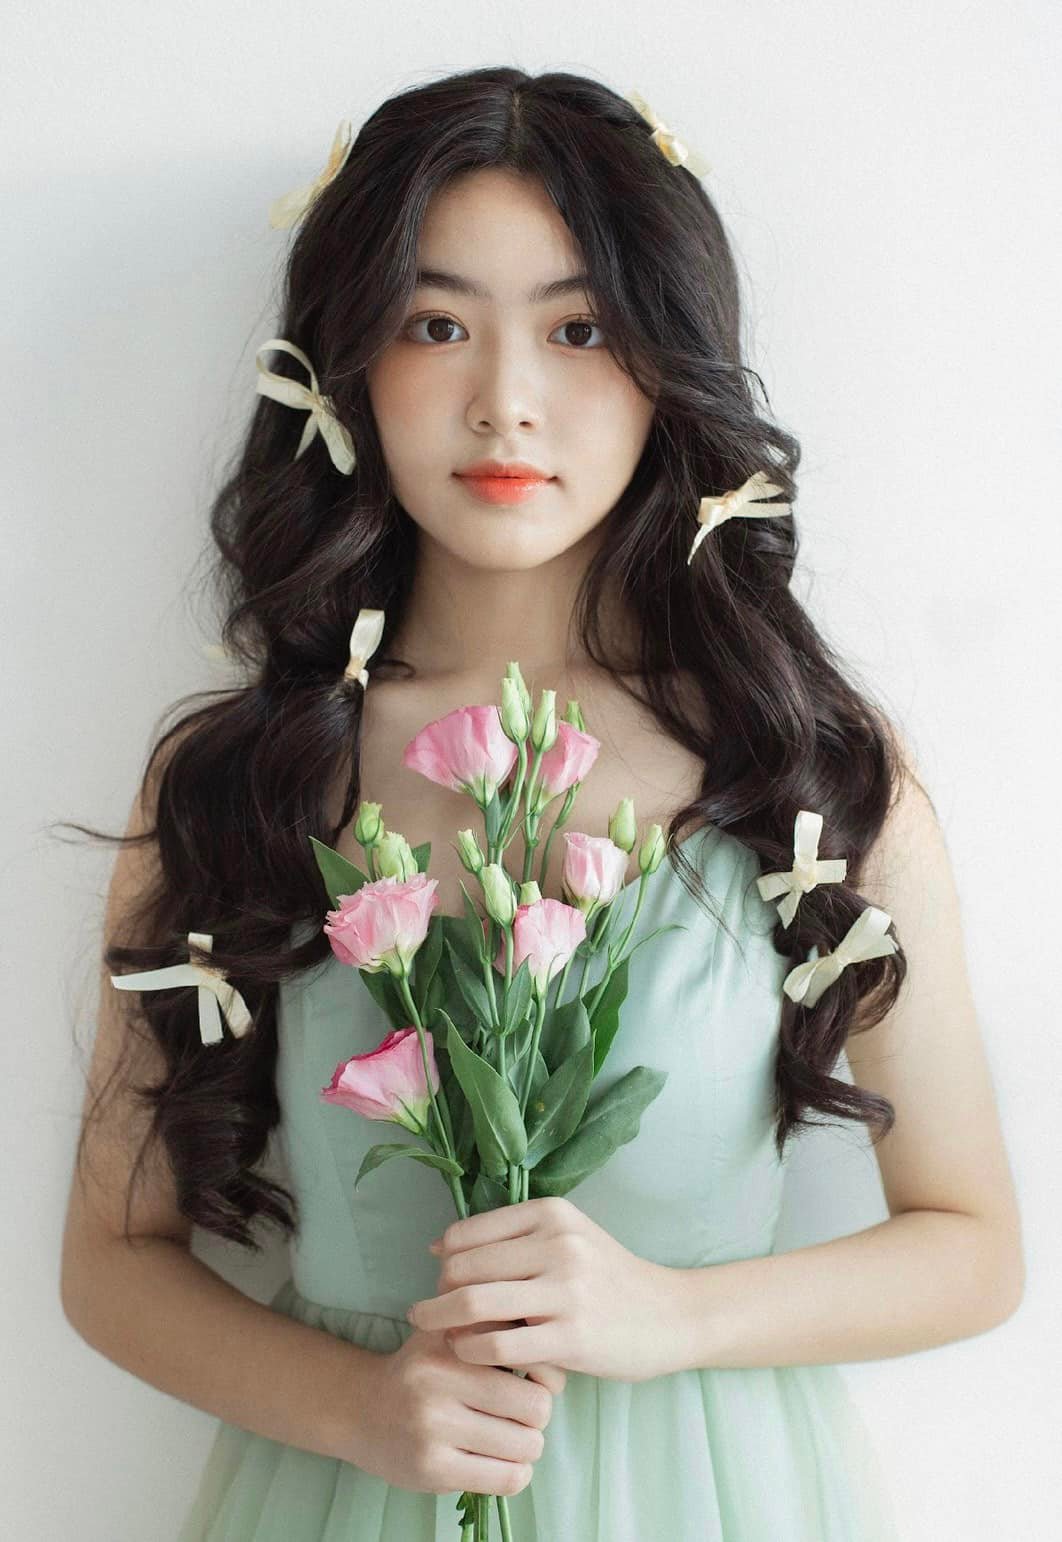 Nhan sắc xinh đẹp, lôi cuốn của con gái MC Quyền Linh ở tuổi 16 được dự đoán &quot;Hoa hậu tương lai&quot; - Ảnh 1.